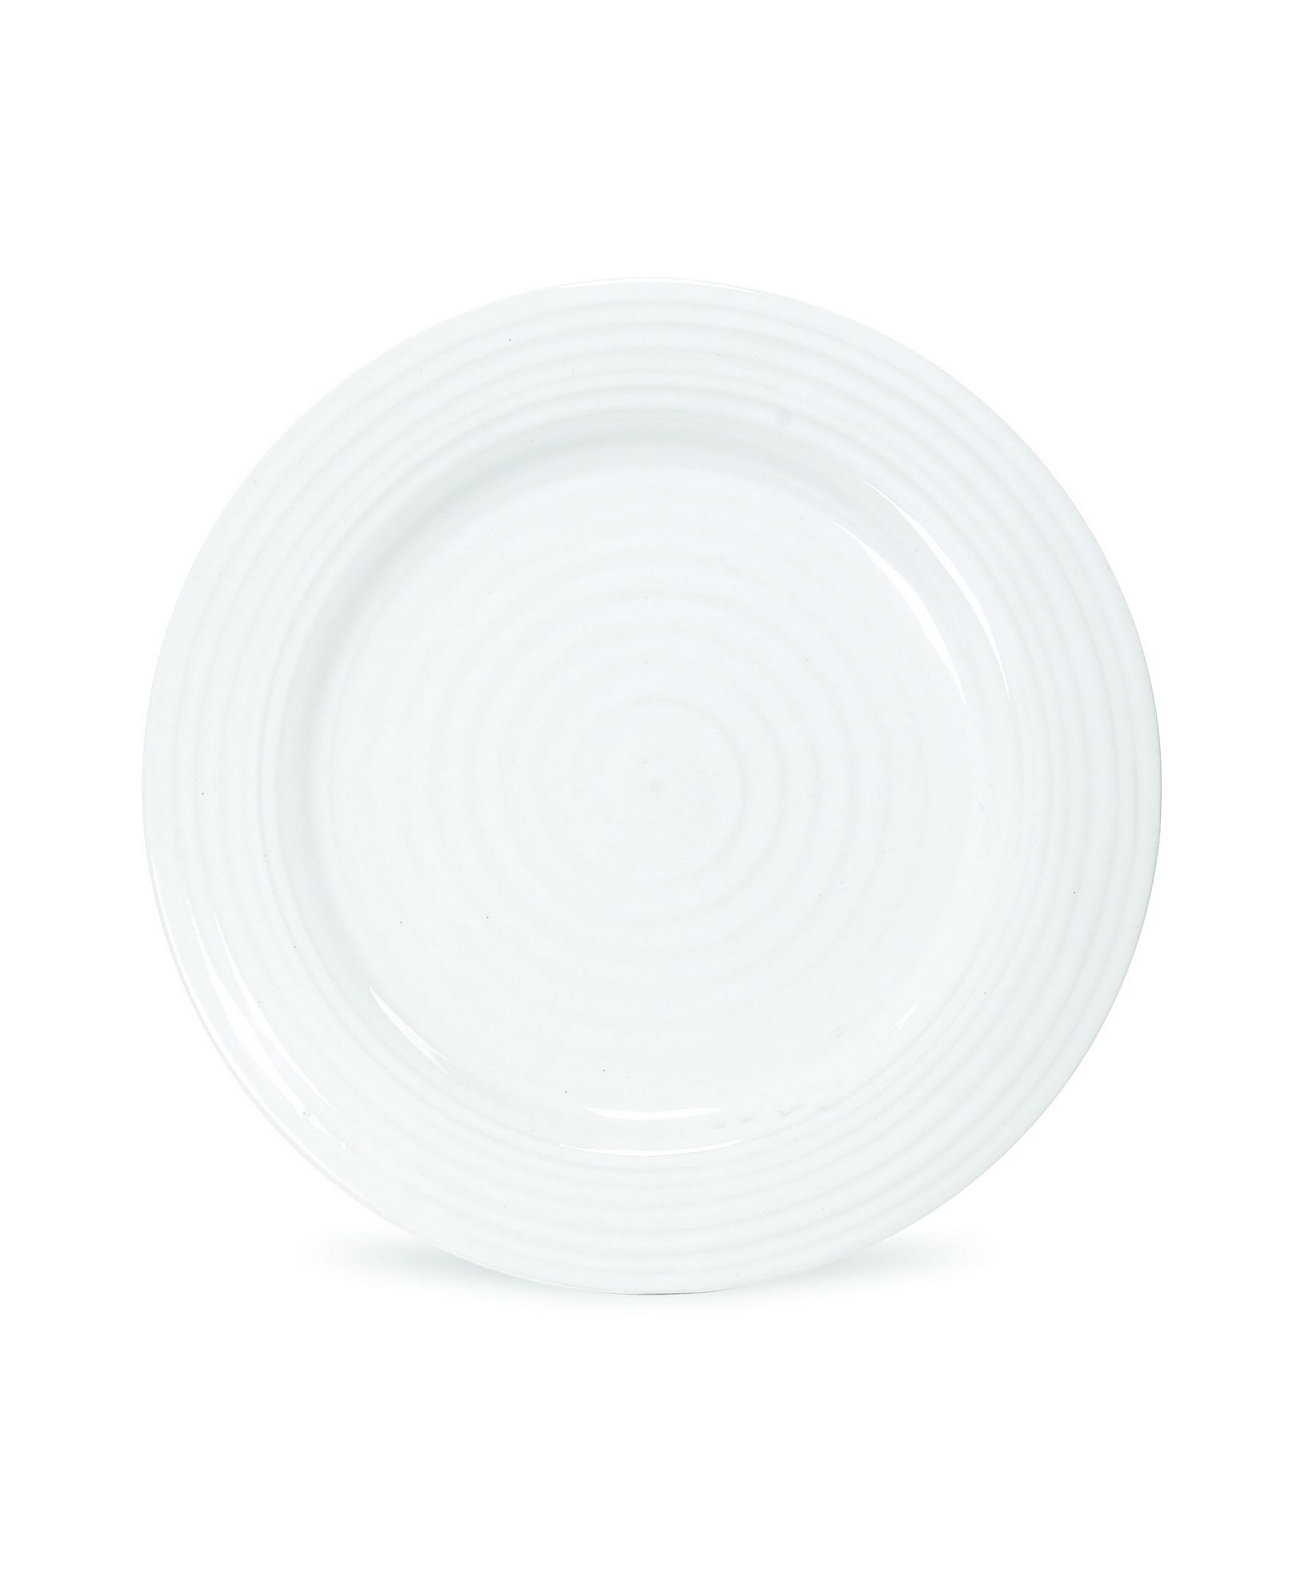 Обеденные тарелки Sophie Conran, набор из 4 шт. Portmeirion